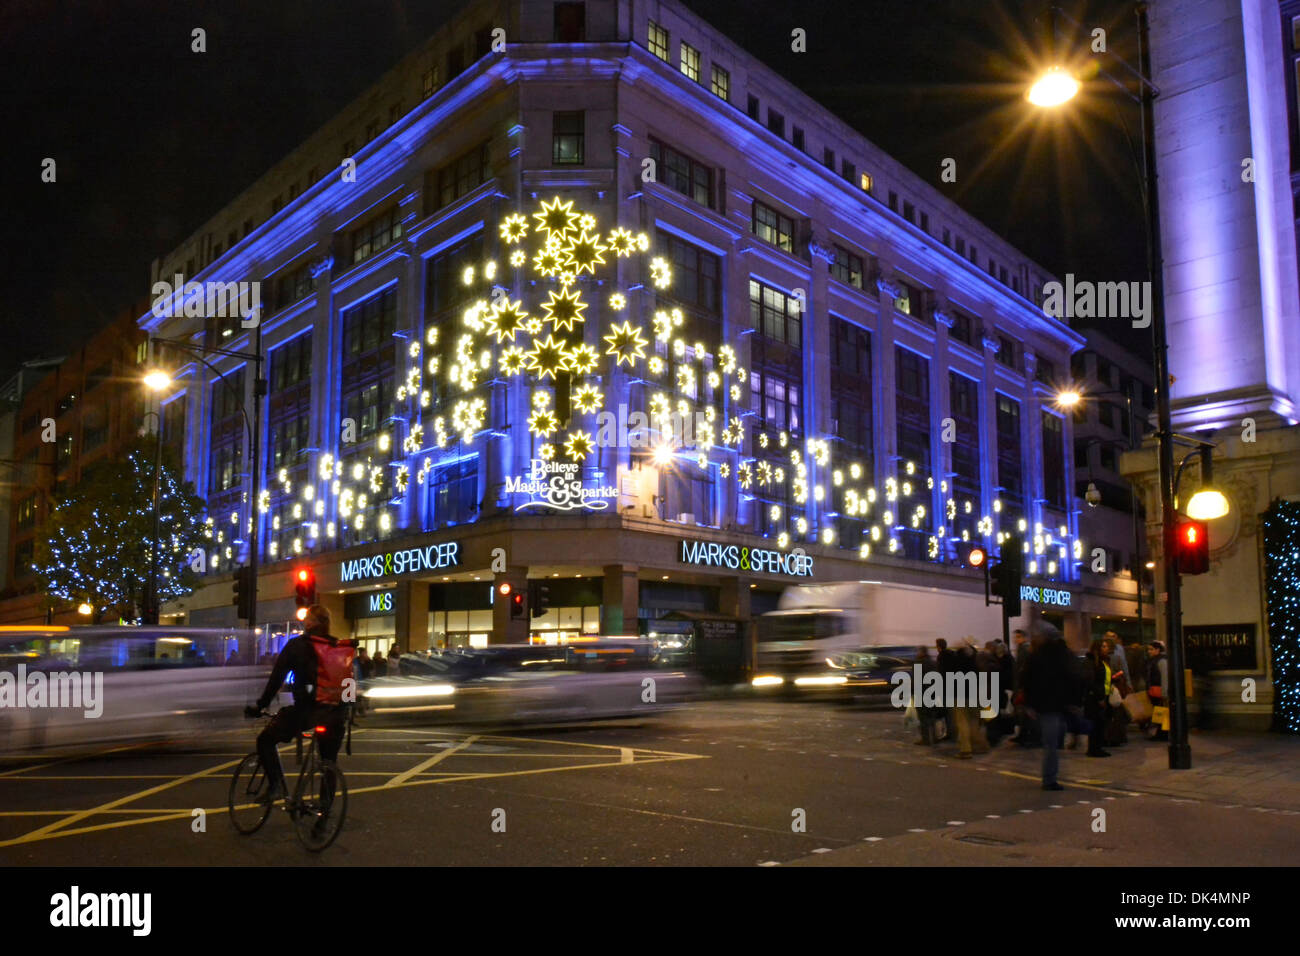 Illuminations de Noël illuminations de nuit de Noël Marks and Spencer bâtiment de magasin À l'angle d'Oxford Street Baker Street M&S Retail Shopping business Londres, Royaume-Uni Banque D'Images